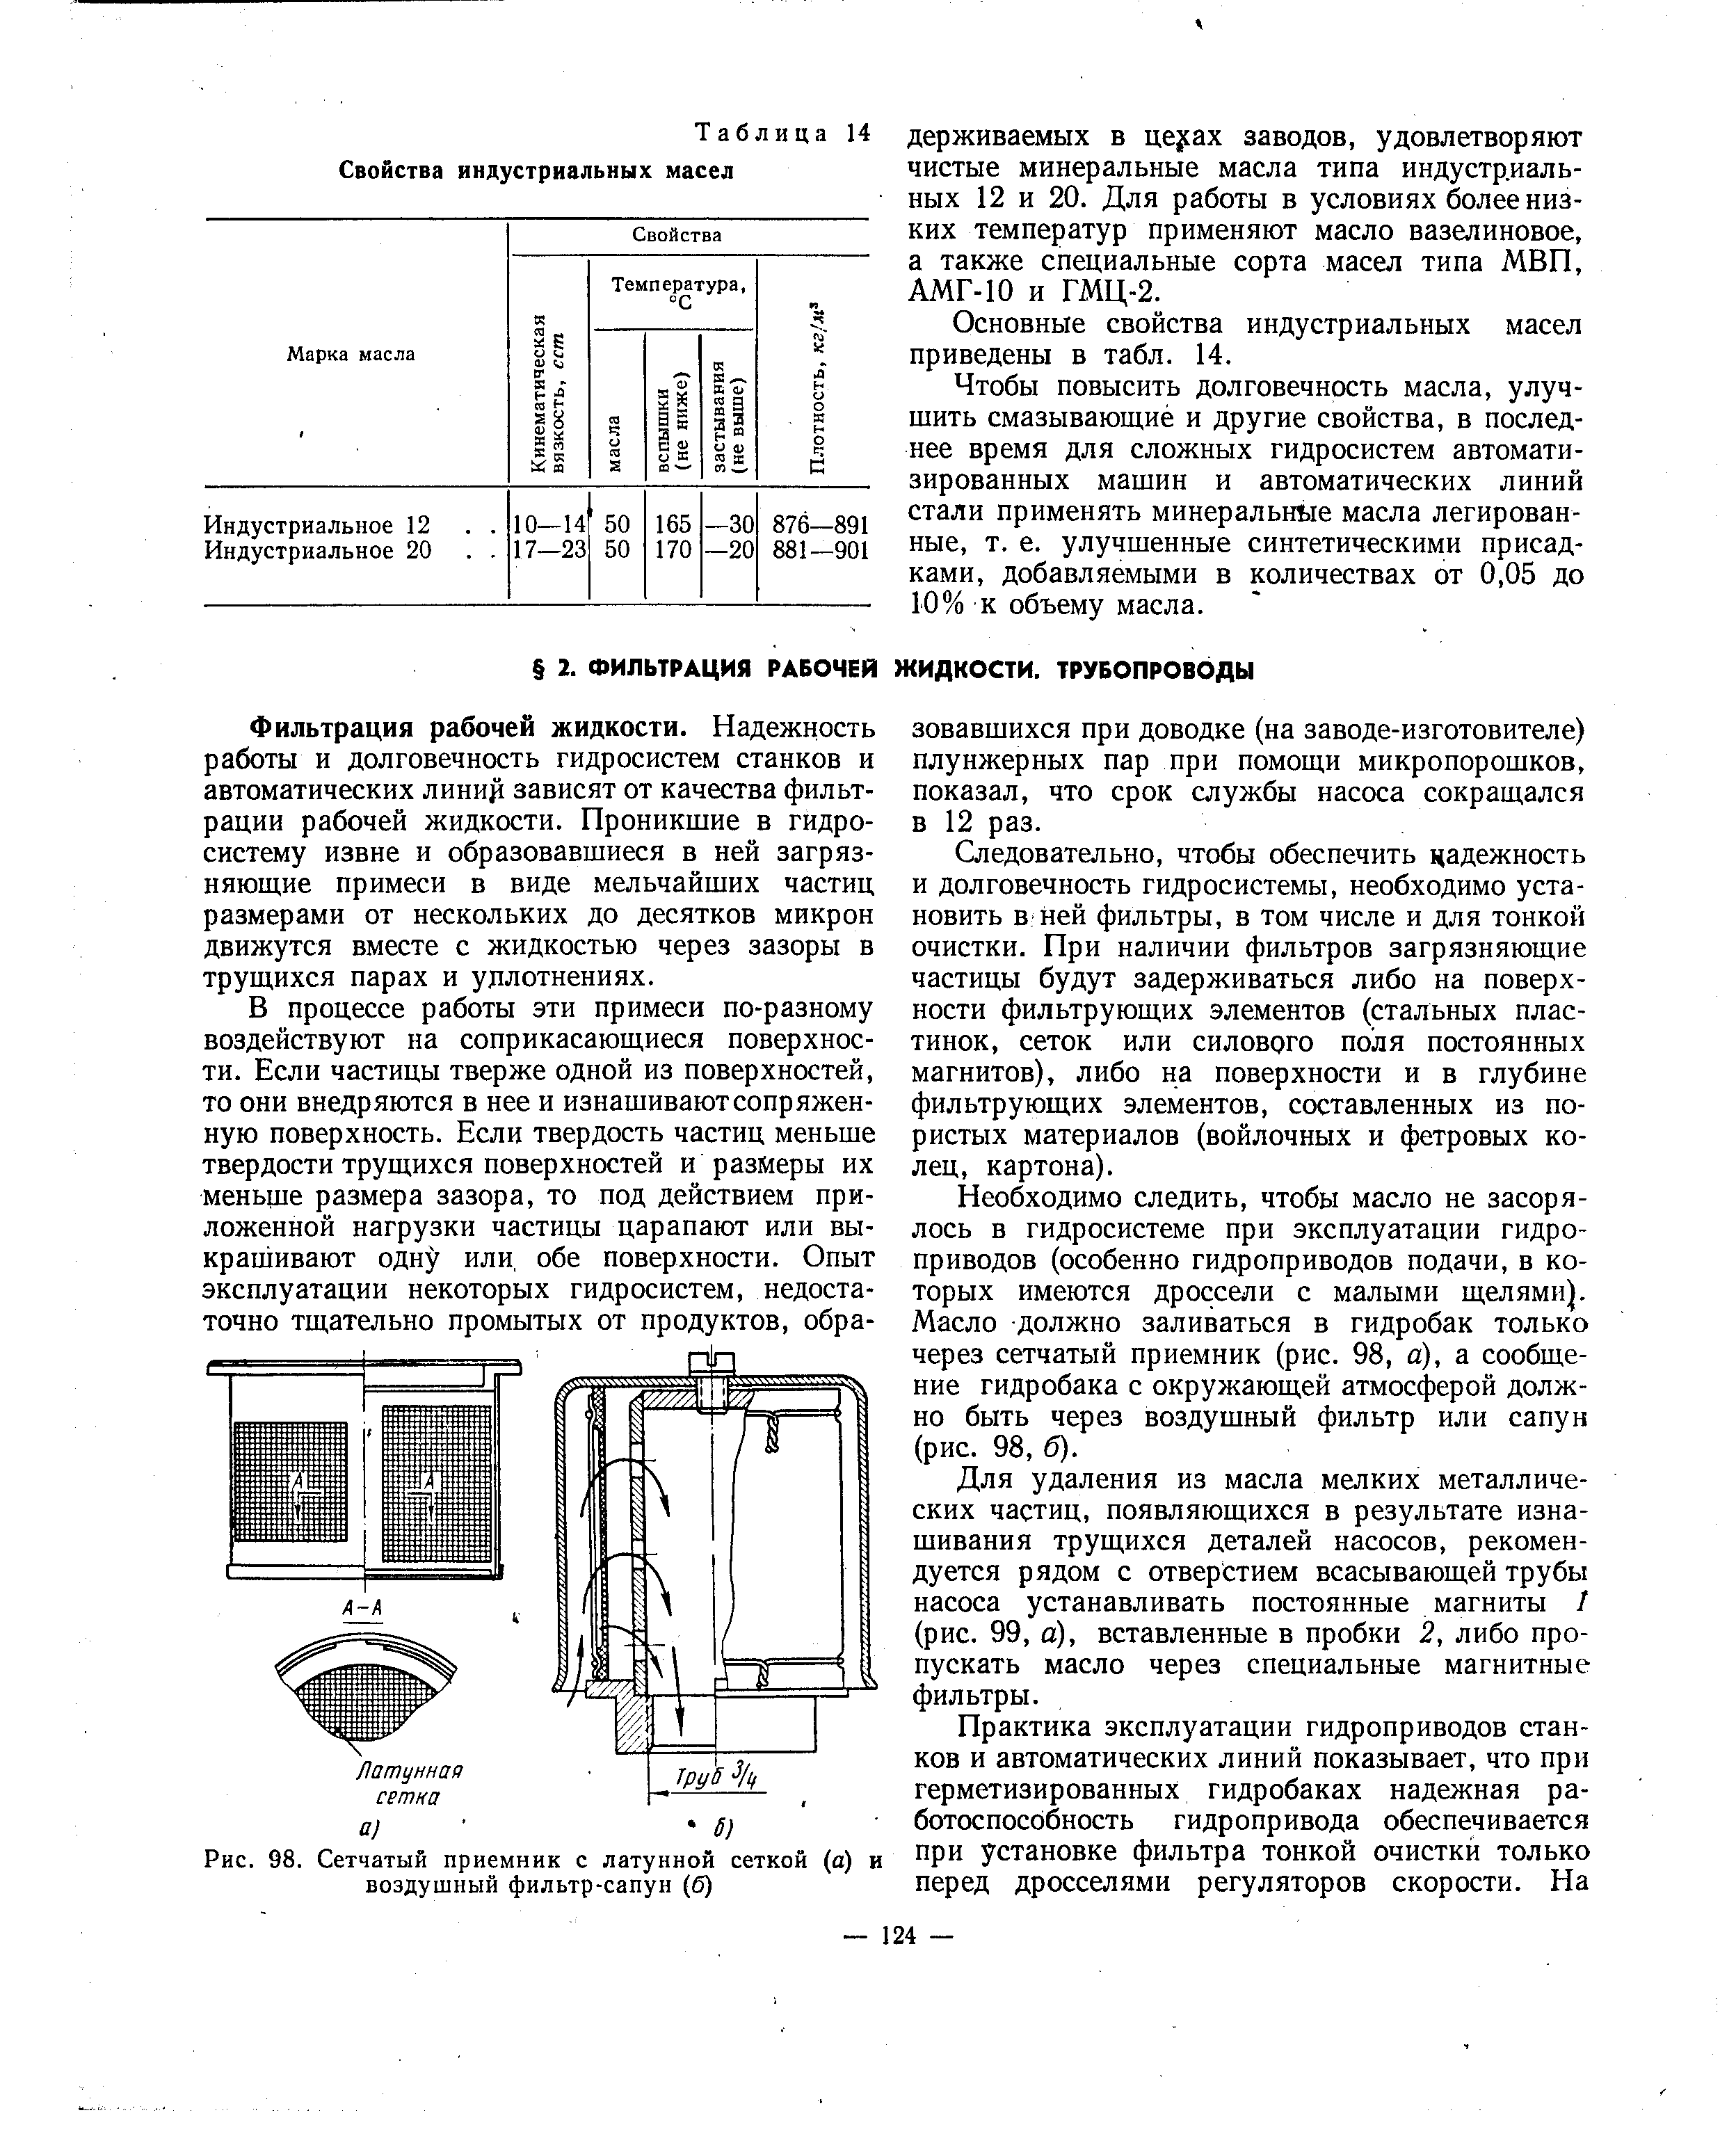 Рис. 98. Сетчатый приемник с латунной сеткой (а) и воздушный фильтр-сапун (б)
